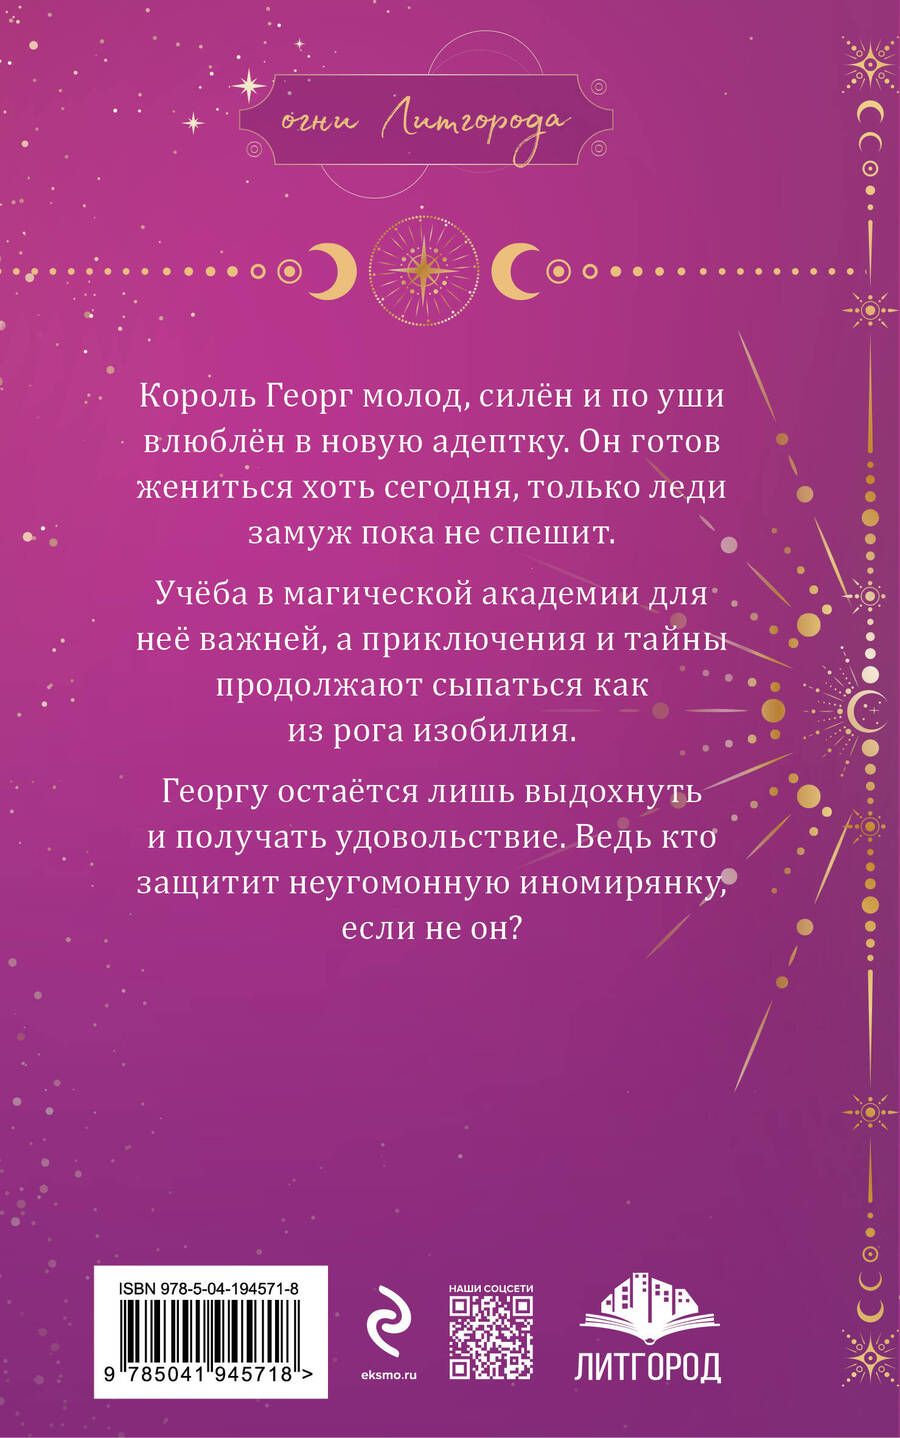 Обложка книги "Гаврилова, Недотрога: Любимая адептка его величества. Книга 3"